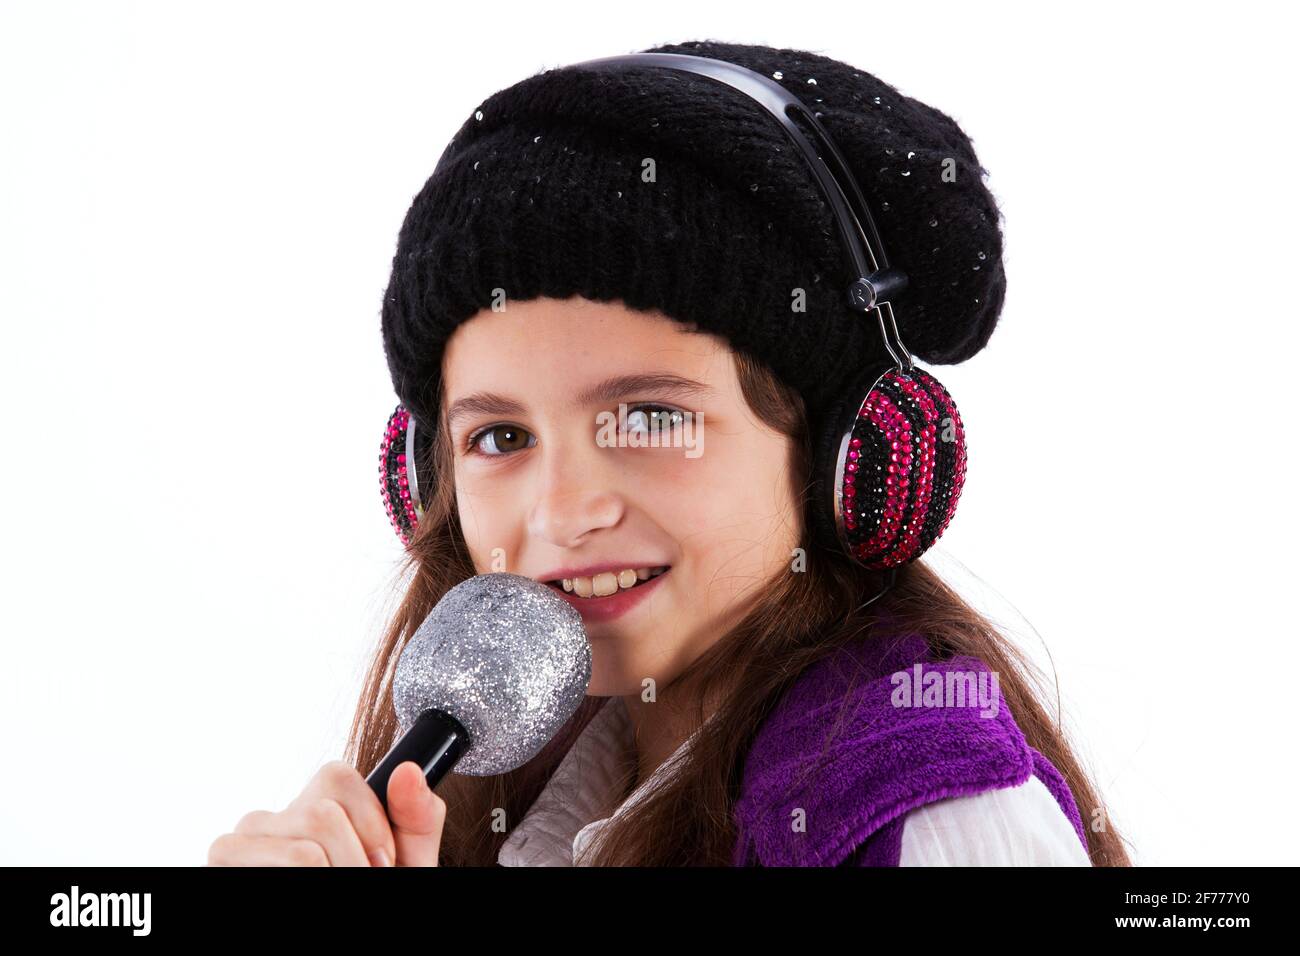 Weibliches Kind, das mit einem Mikrofon und Kopfhörern singt Stockfoto